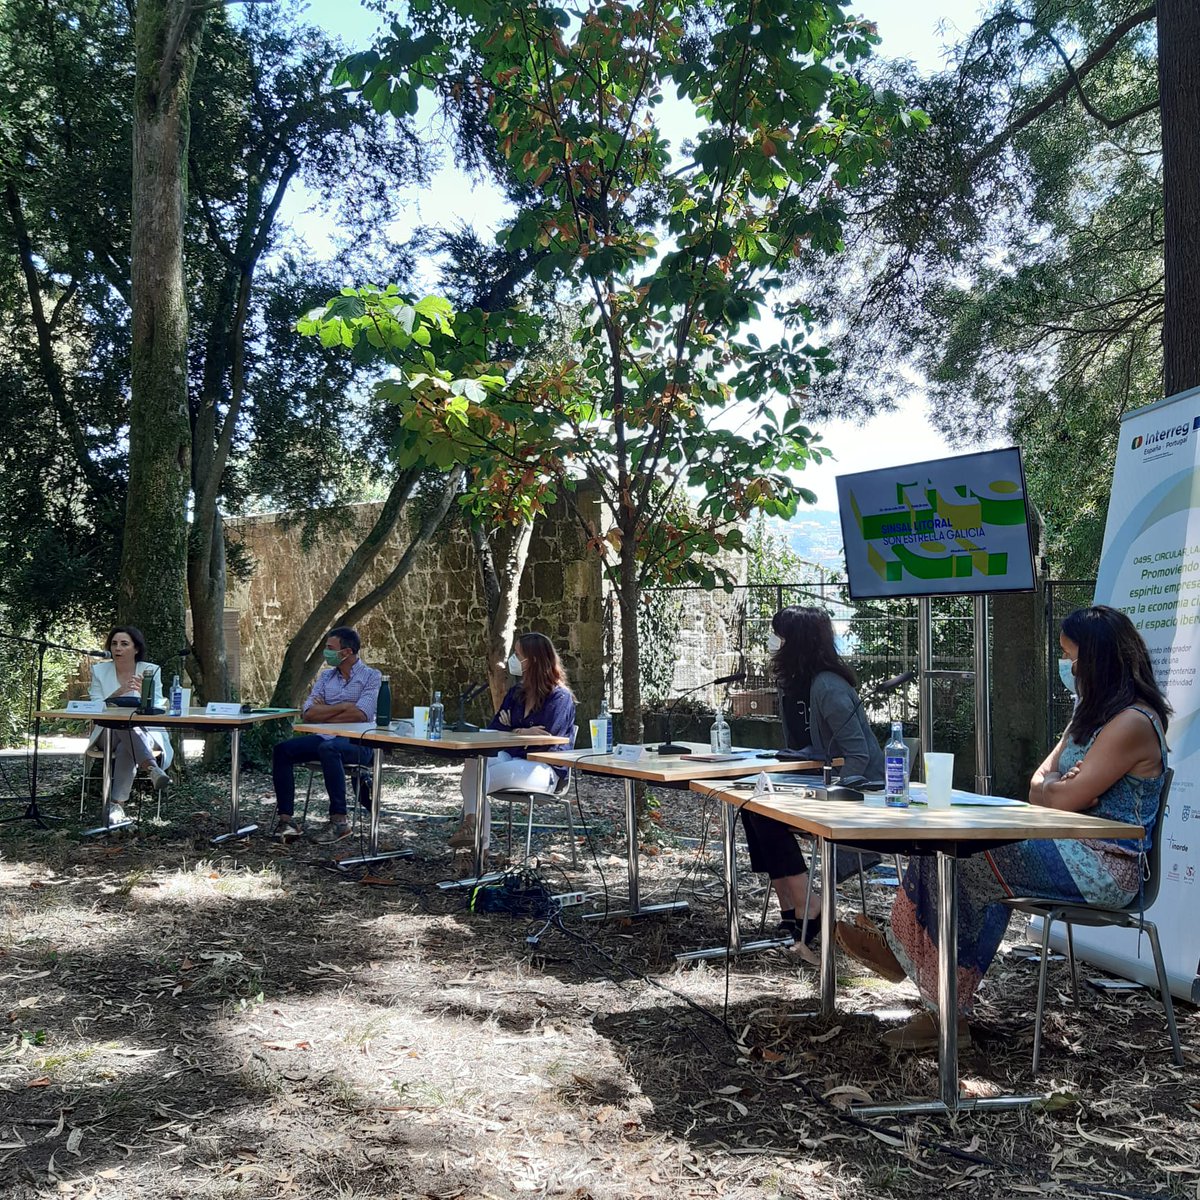 A sesión da mañá da xornada A Senda Circular remata cunha mesa promovida por @FPaideiaGaliza na que Agroamb, Oui Jane! e @revertia contan os seus proxectos empresariais.
#economíacircular
#SinsalLitoralSONEG
San Simón #Redondela